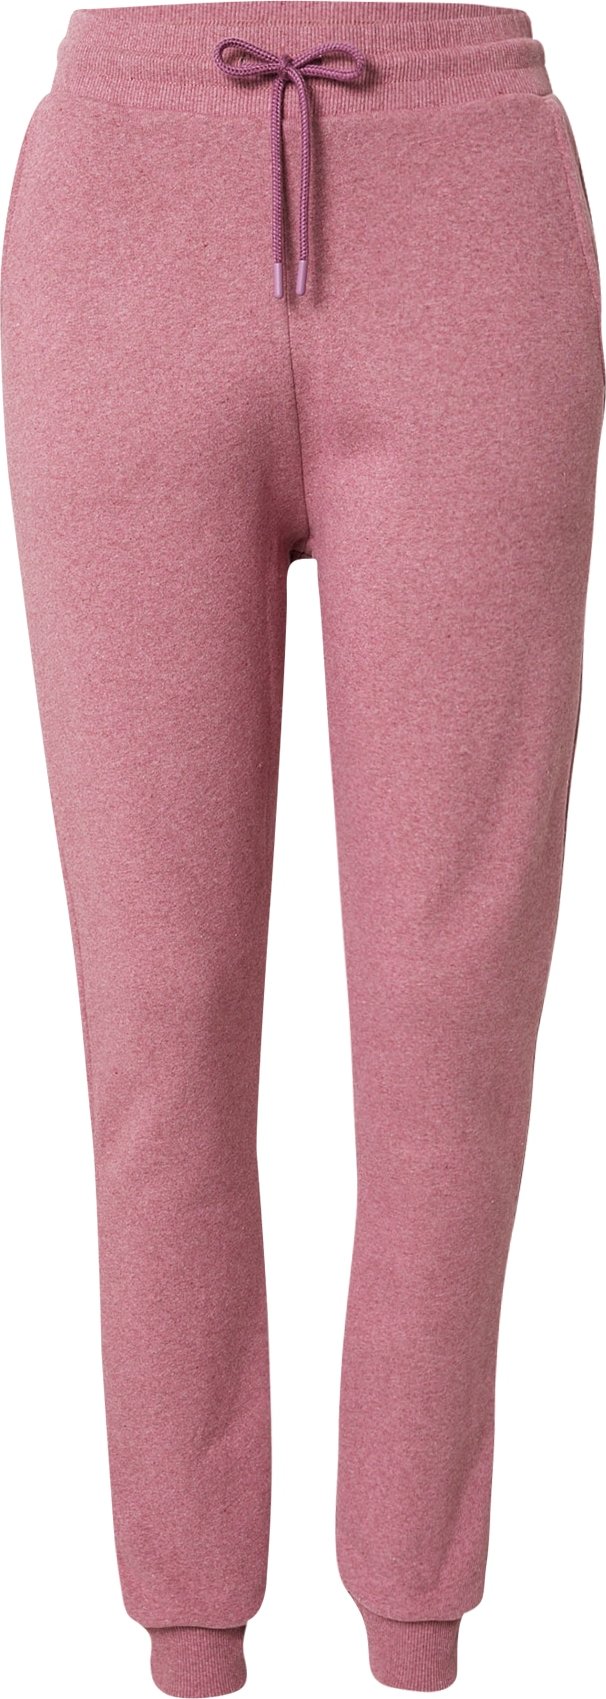 NU-IN Kalhoty růžový melír